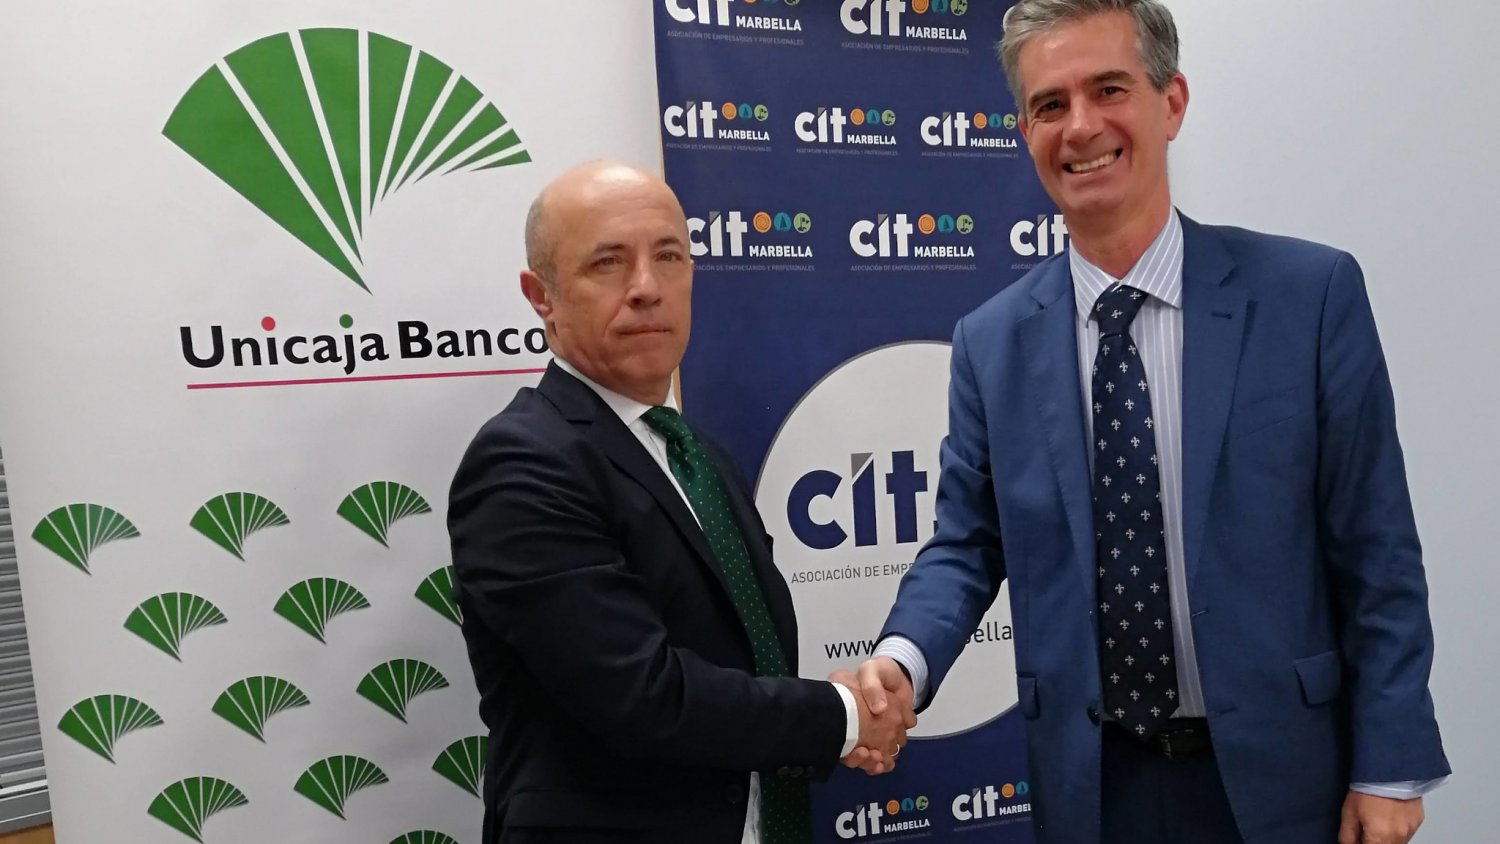 Unicaja Banco reafirma su apoyo a CIT Marbella con productos y servicios financieros para impulsar su actividad